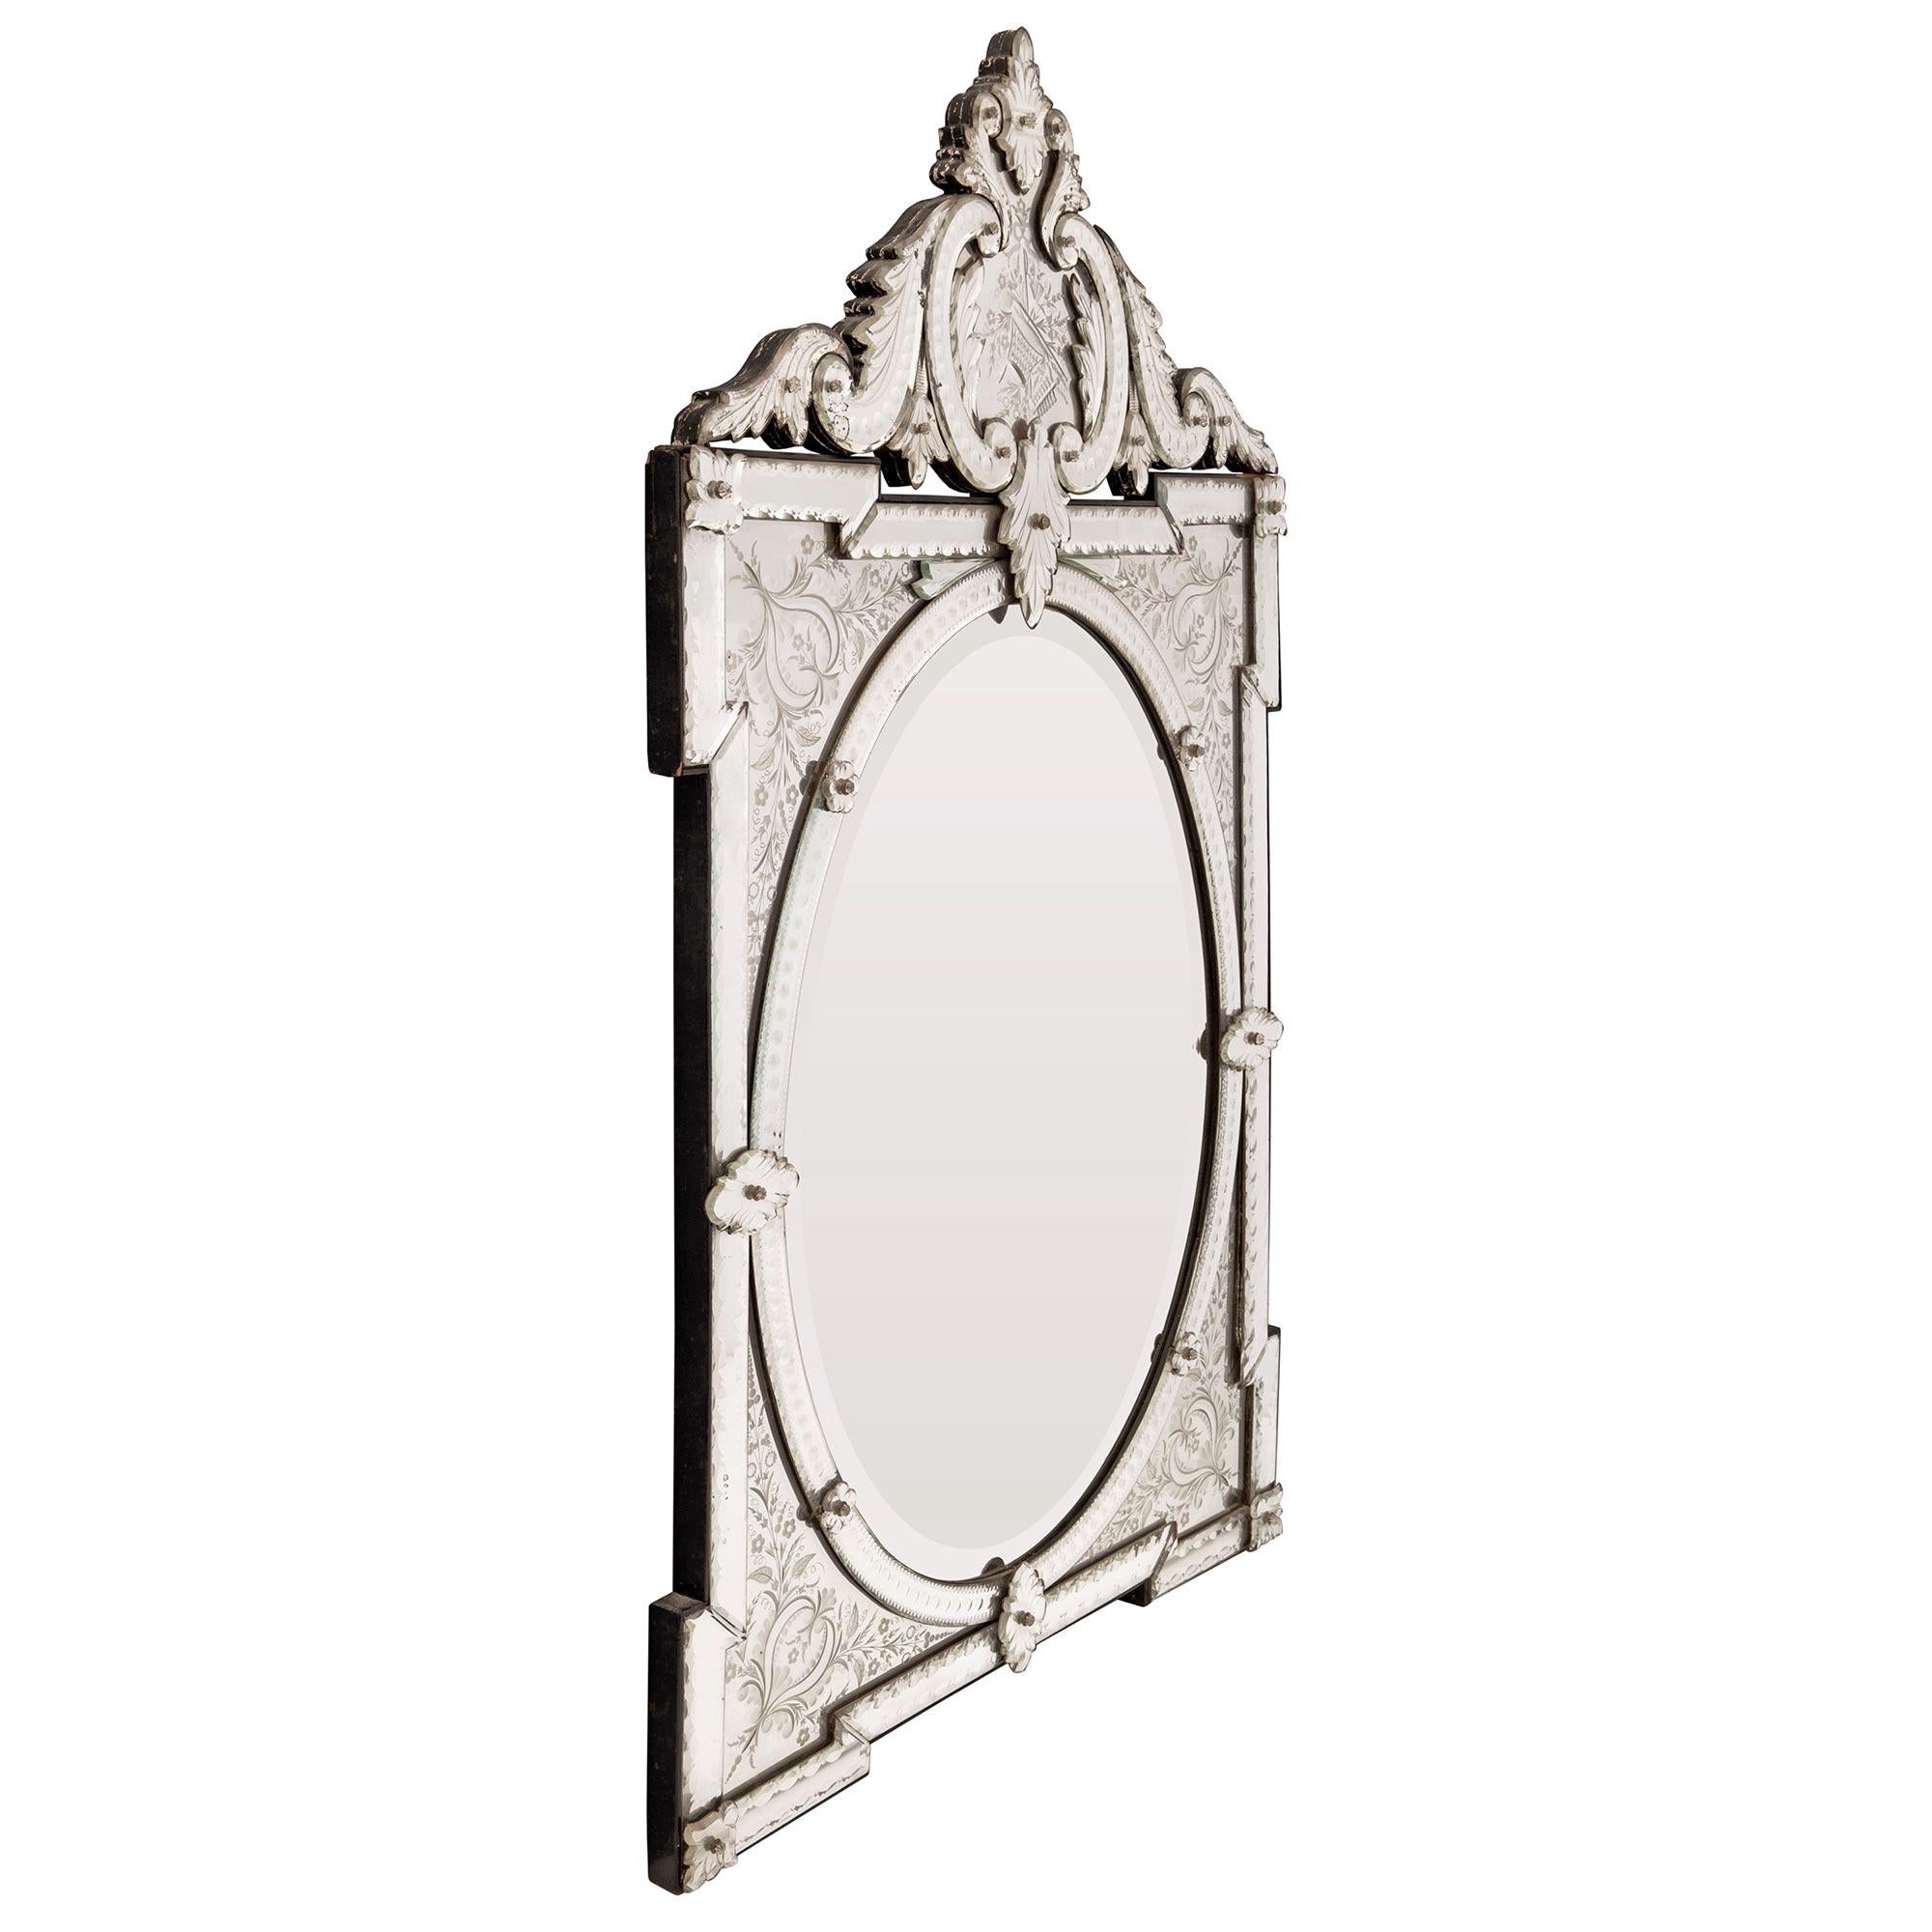 Un beau et extrêmement décoratif miroir vénitien italien du 19ème siècle. Le miroir conserve toutes ses plaques de miroir d'origine et le miroir central ovale présente une élégante bordure biseautée encadrée d'une belle bordure perlée gravée avec de